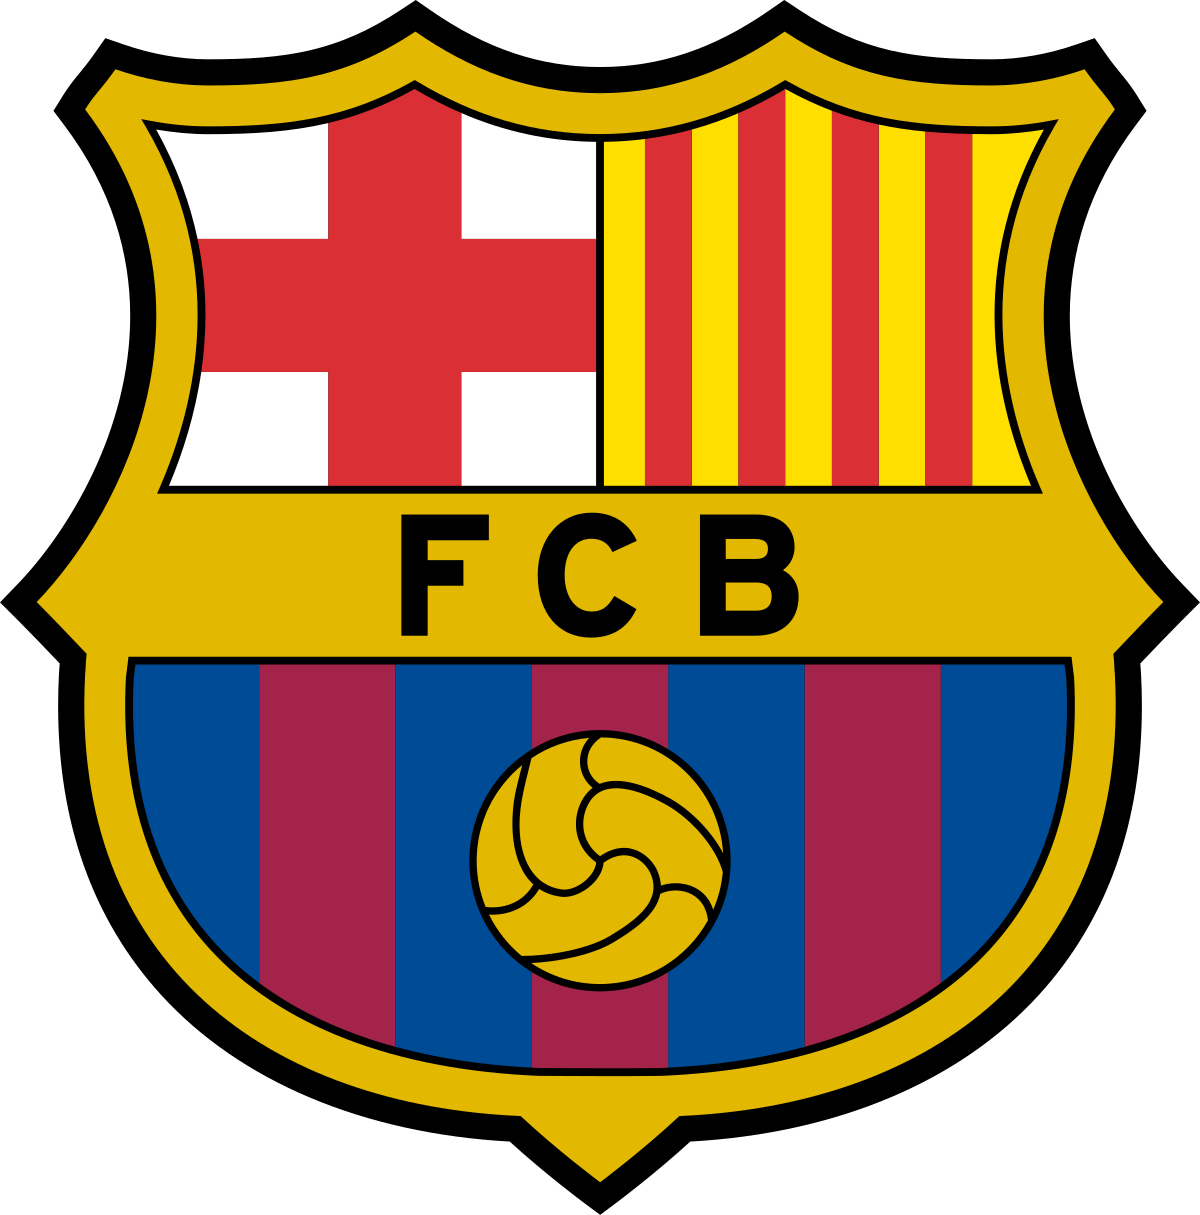 fußballspiel fc barcelona – fc bayern münchen am 14. august 2020